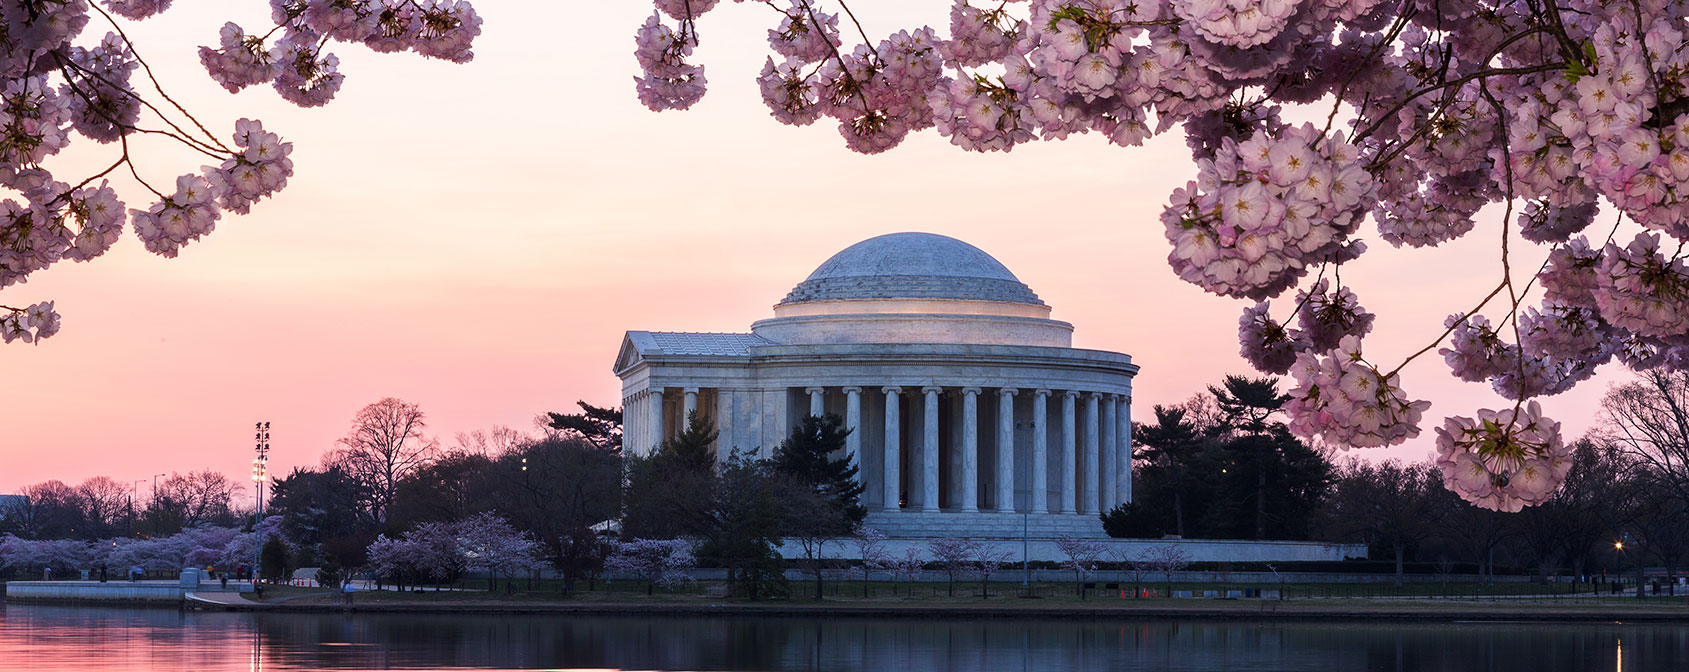 Cerezos en flor en Jefferson Memorial